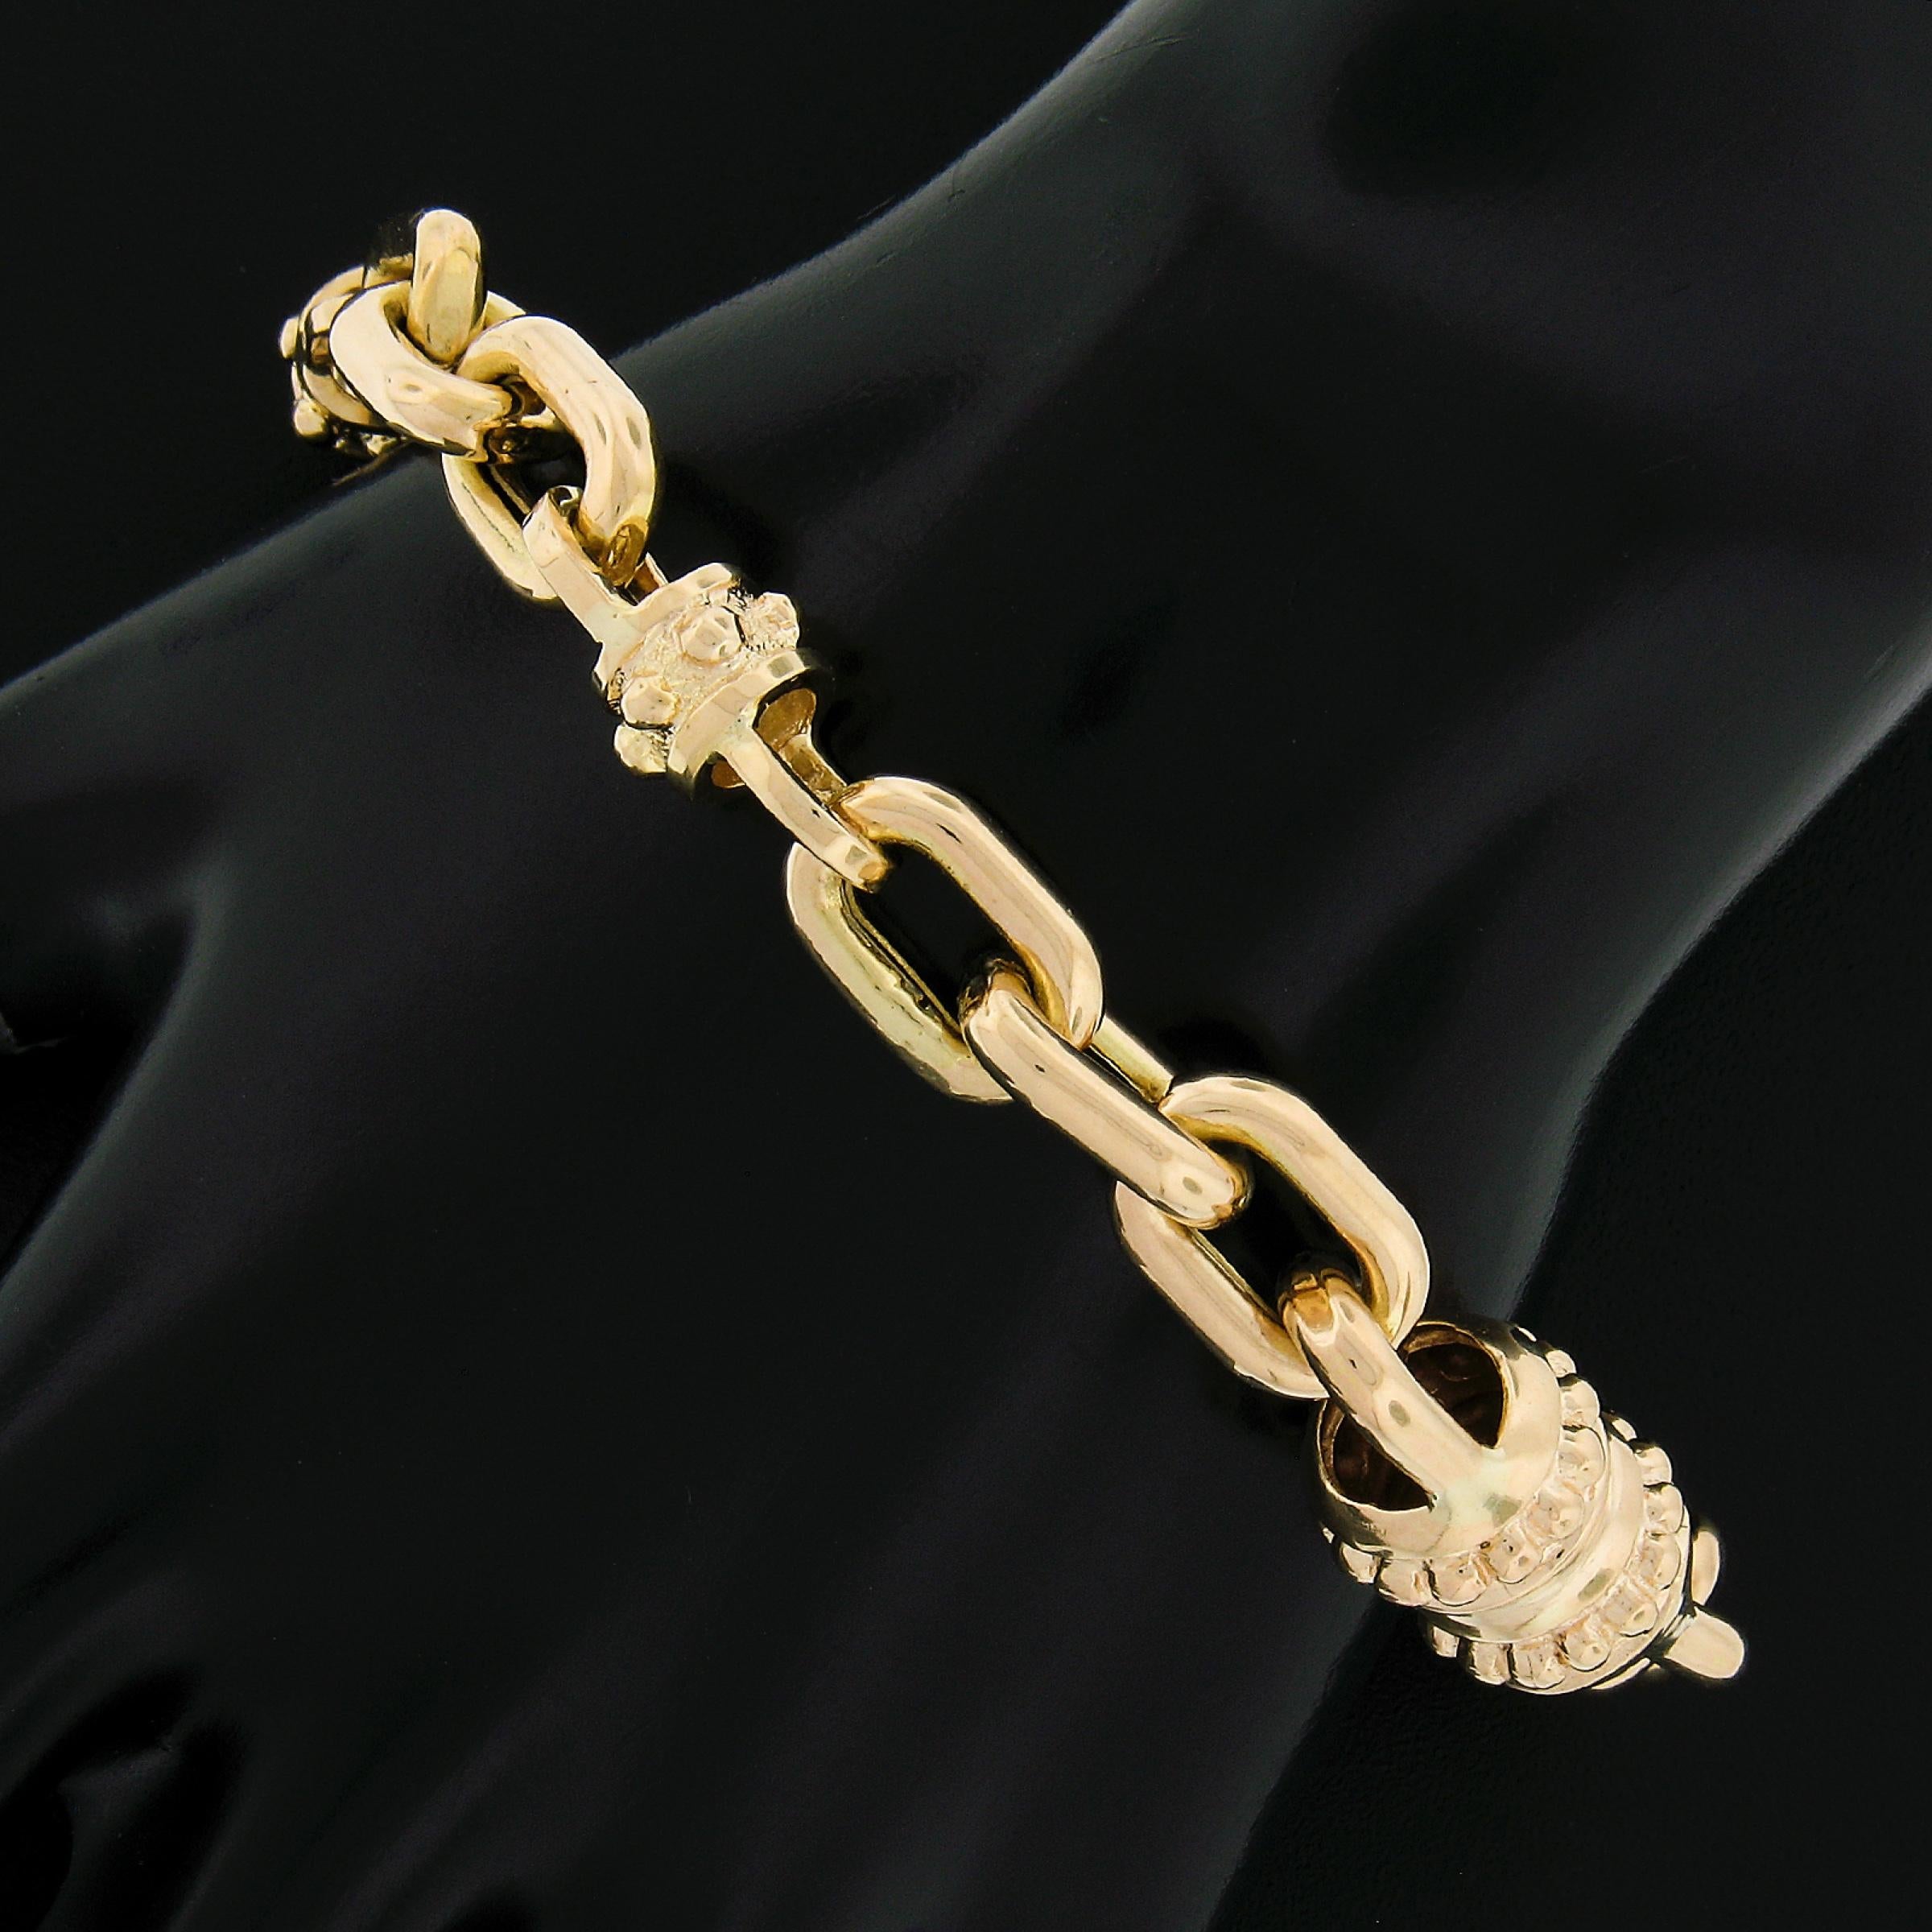 Sie sind auf eine wunderschöne Unisex-Armband in massivem 14k Gelbgold gefertigt und verfügt über große offene Kabel-Link-Design mit Perlen runden Abschnitten in ganz. Der Verschluss ist ein großer Karabinerhaken mit Perlen und strukturierter